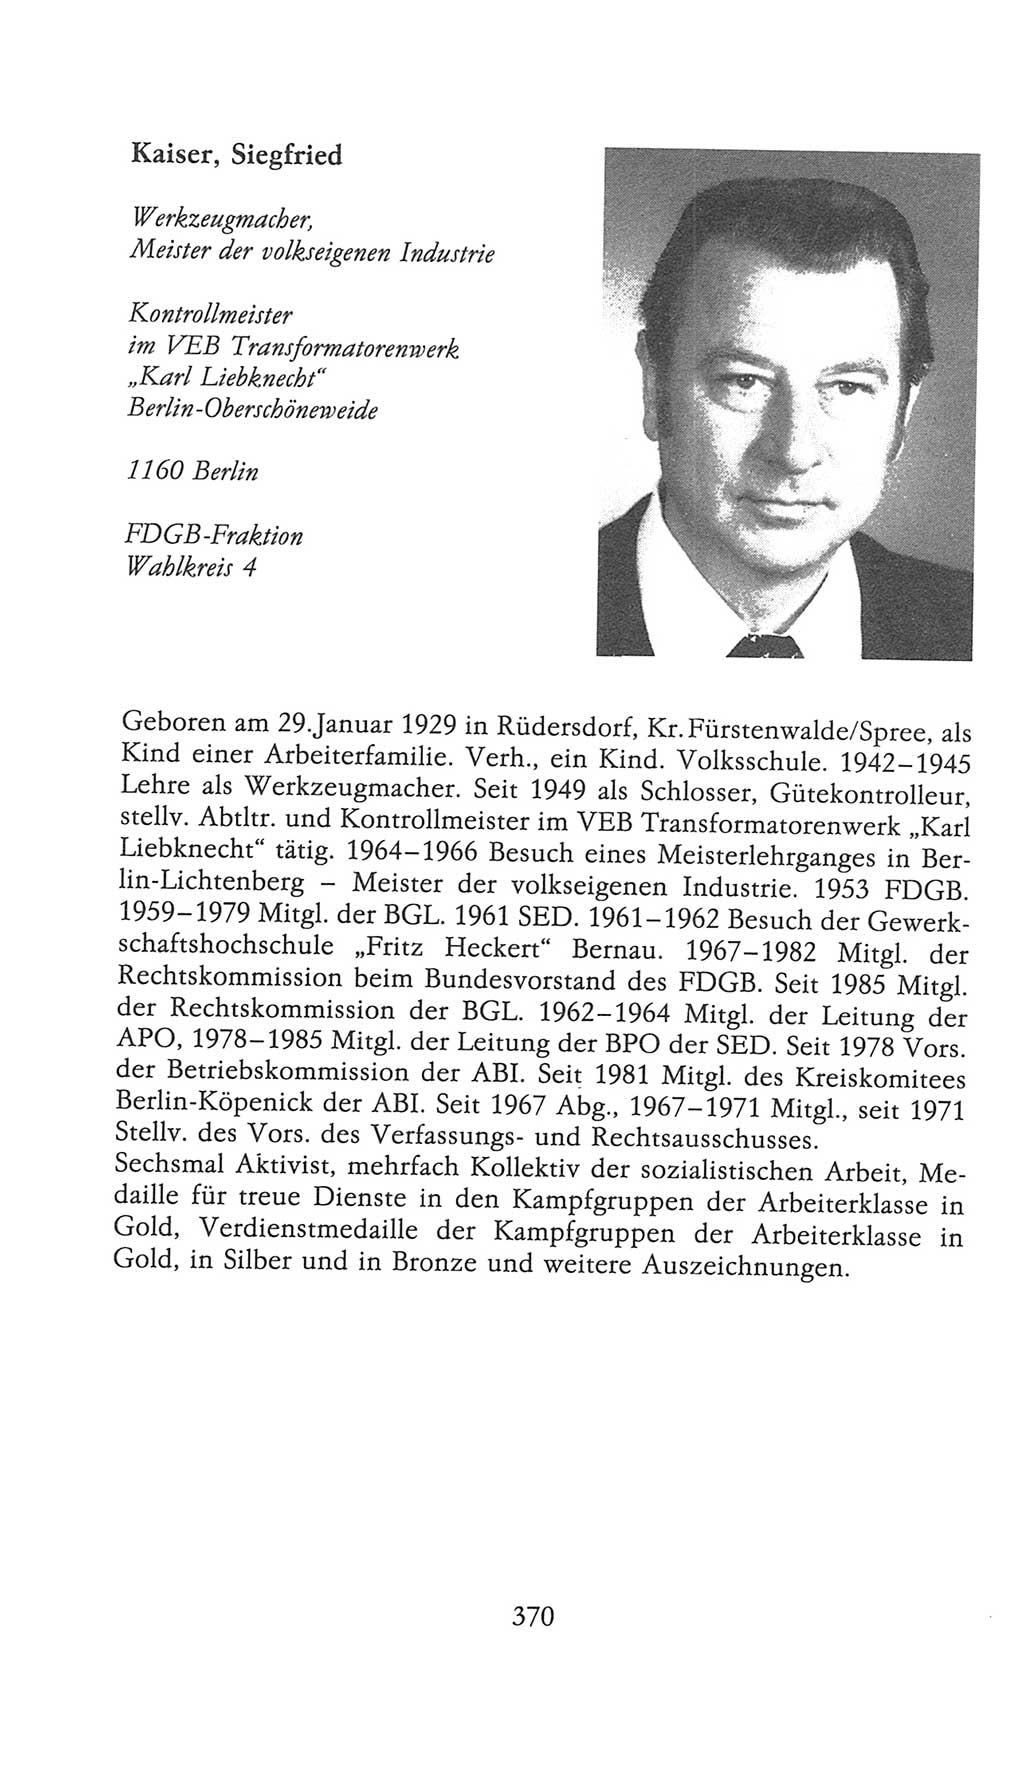 Volkskammer (VK) der Deutschen Demokratischen Republik (DDR), 9. Wahlperiode 1986-1990, Seite 370 (VK. DDR 9. WP. 1986-1990, S. 370)